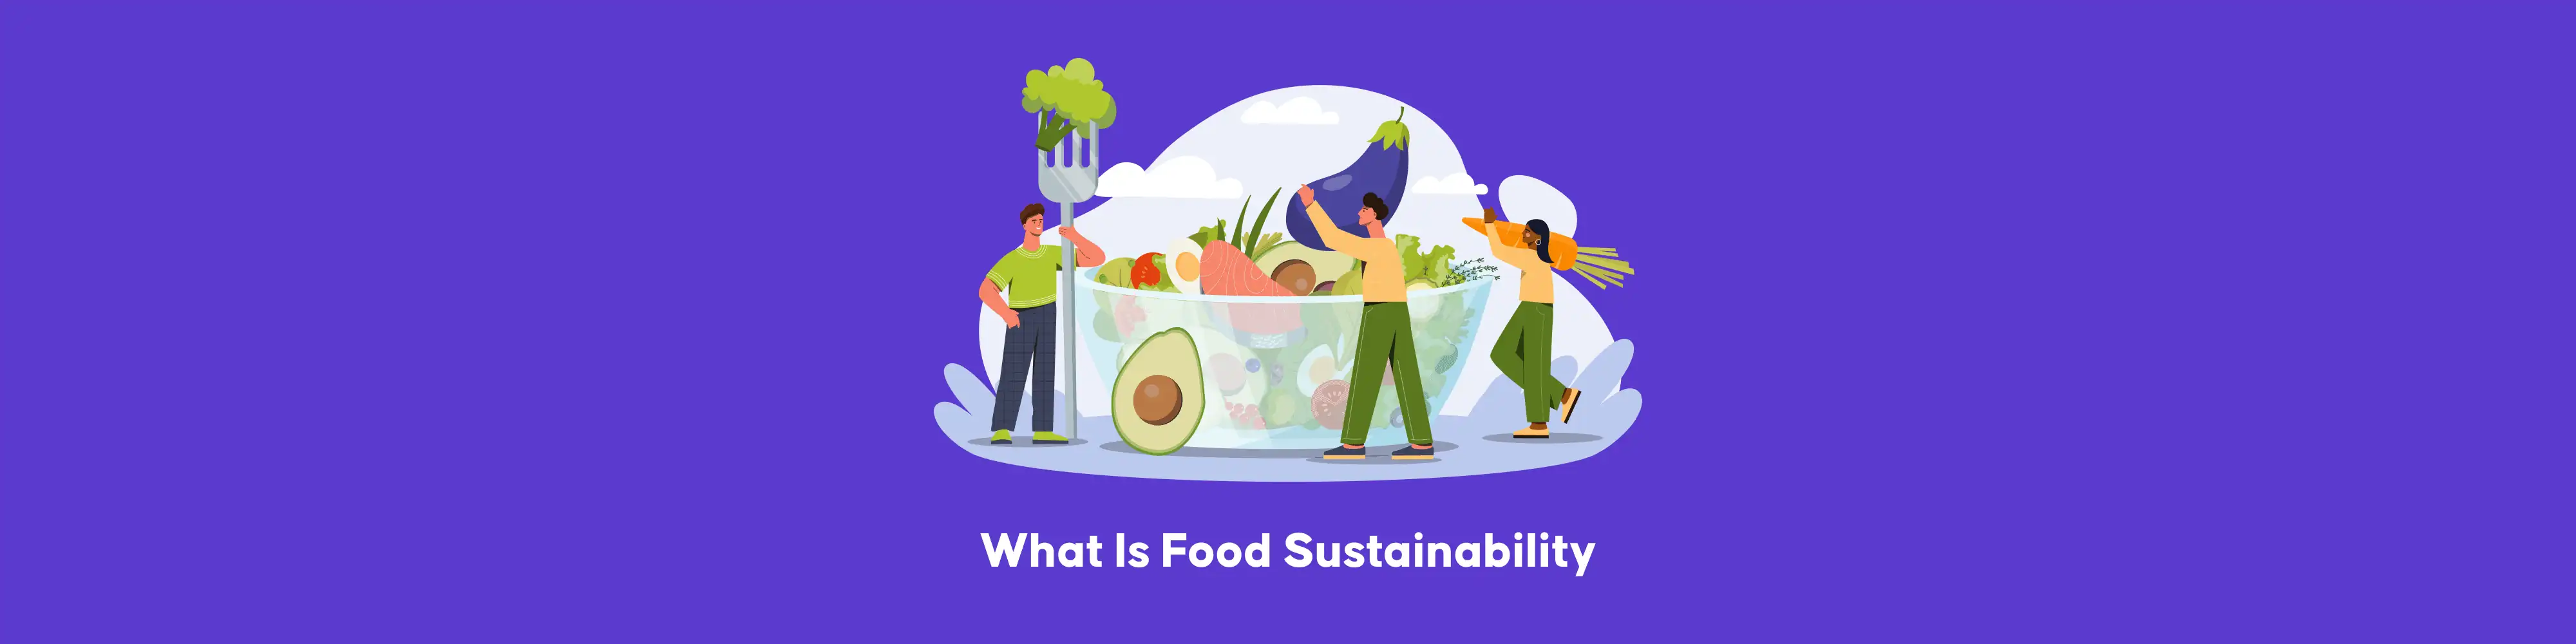 Què és la sostenibilitat alimentària | Noves solucions al repte mundial